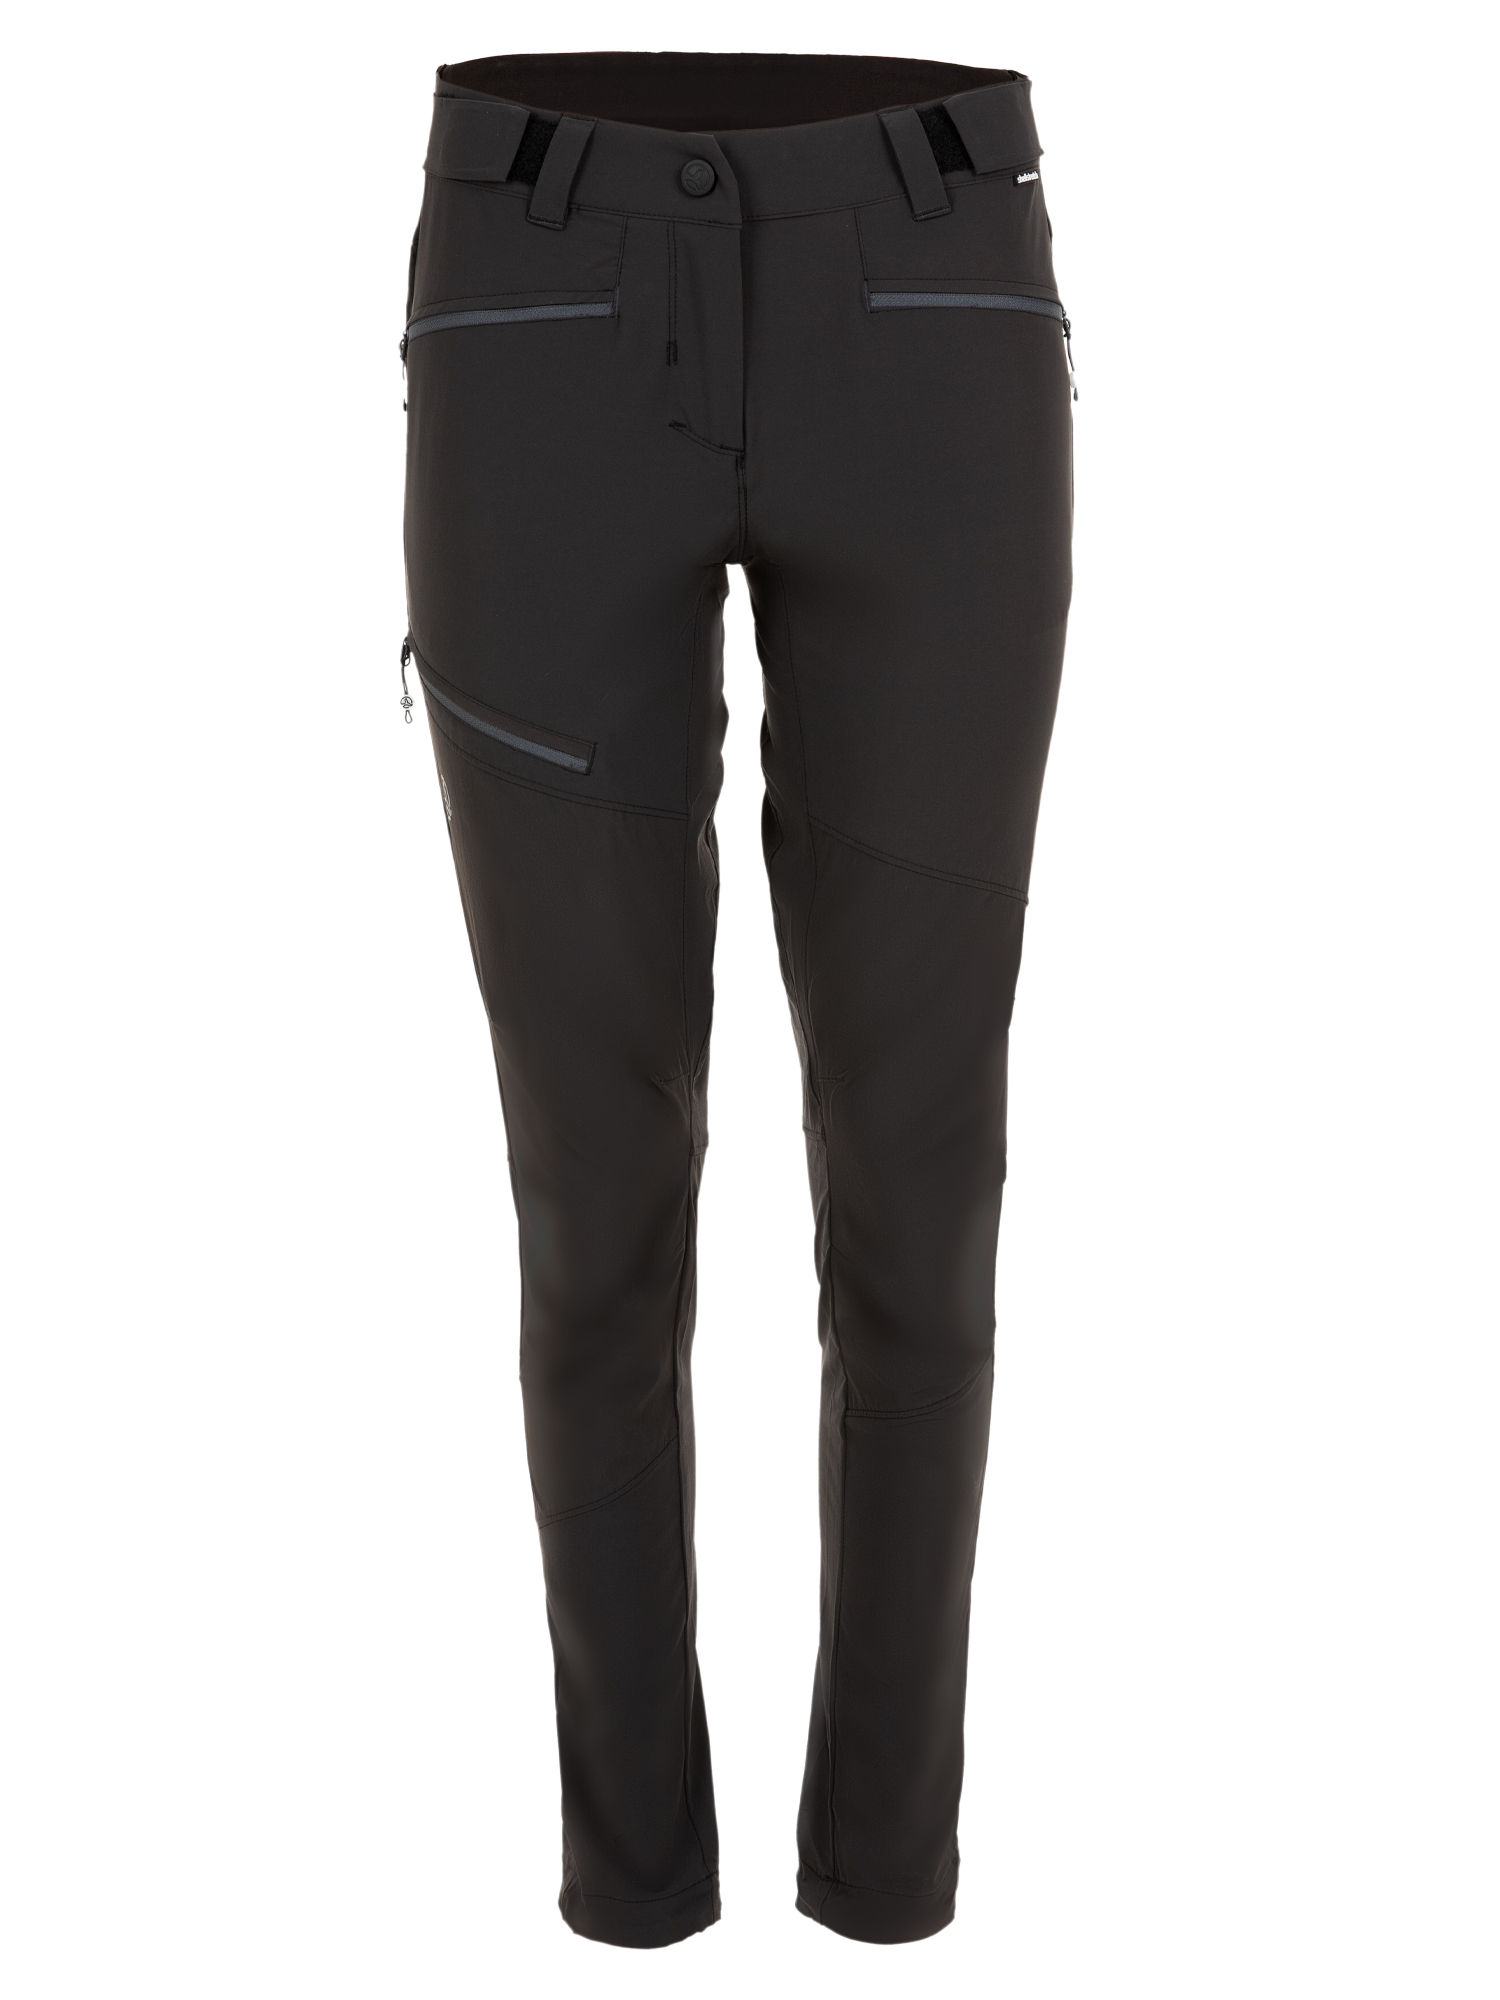 Спортивные брюки женские Ternua Rotar Pt W черные L